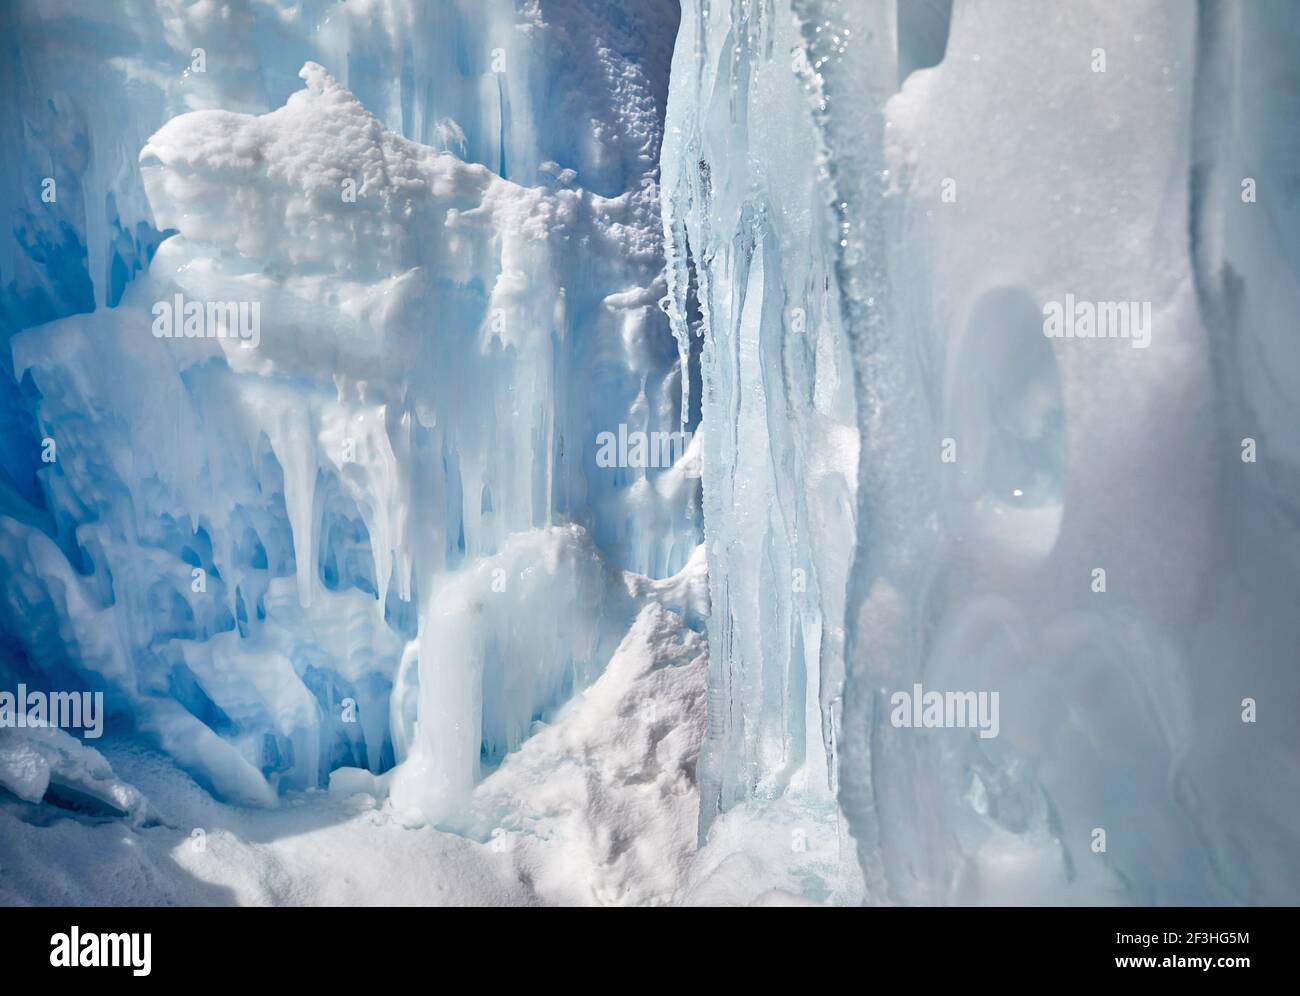 Cascade de montagne gelée à la texture idicles au Kazakhstan Banque D'Images